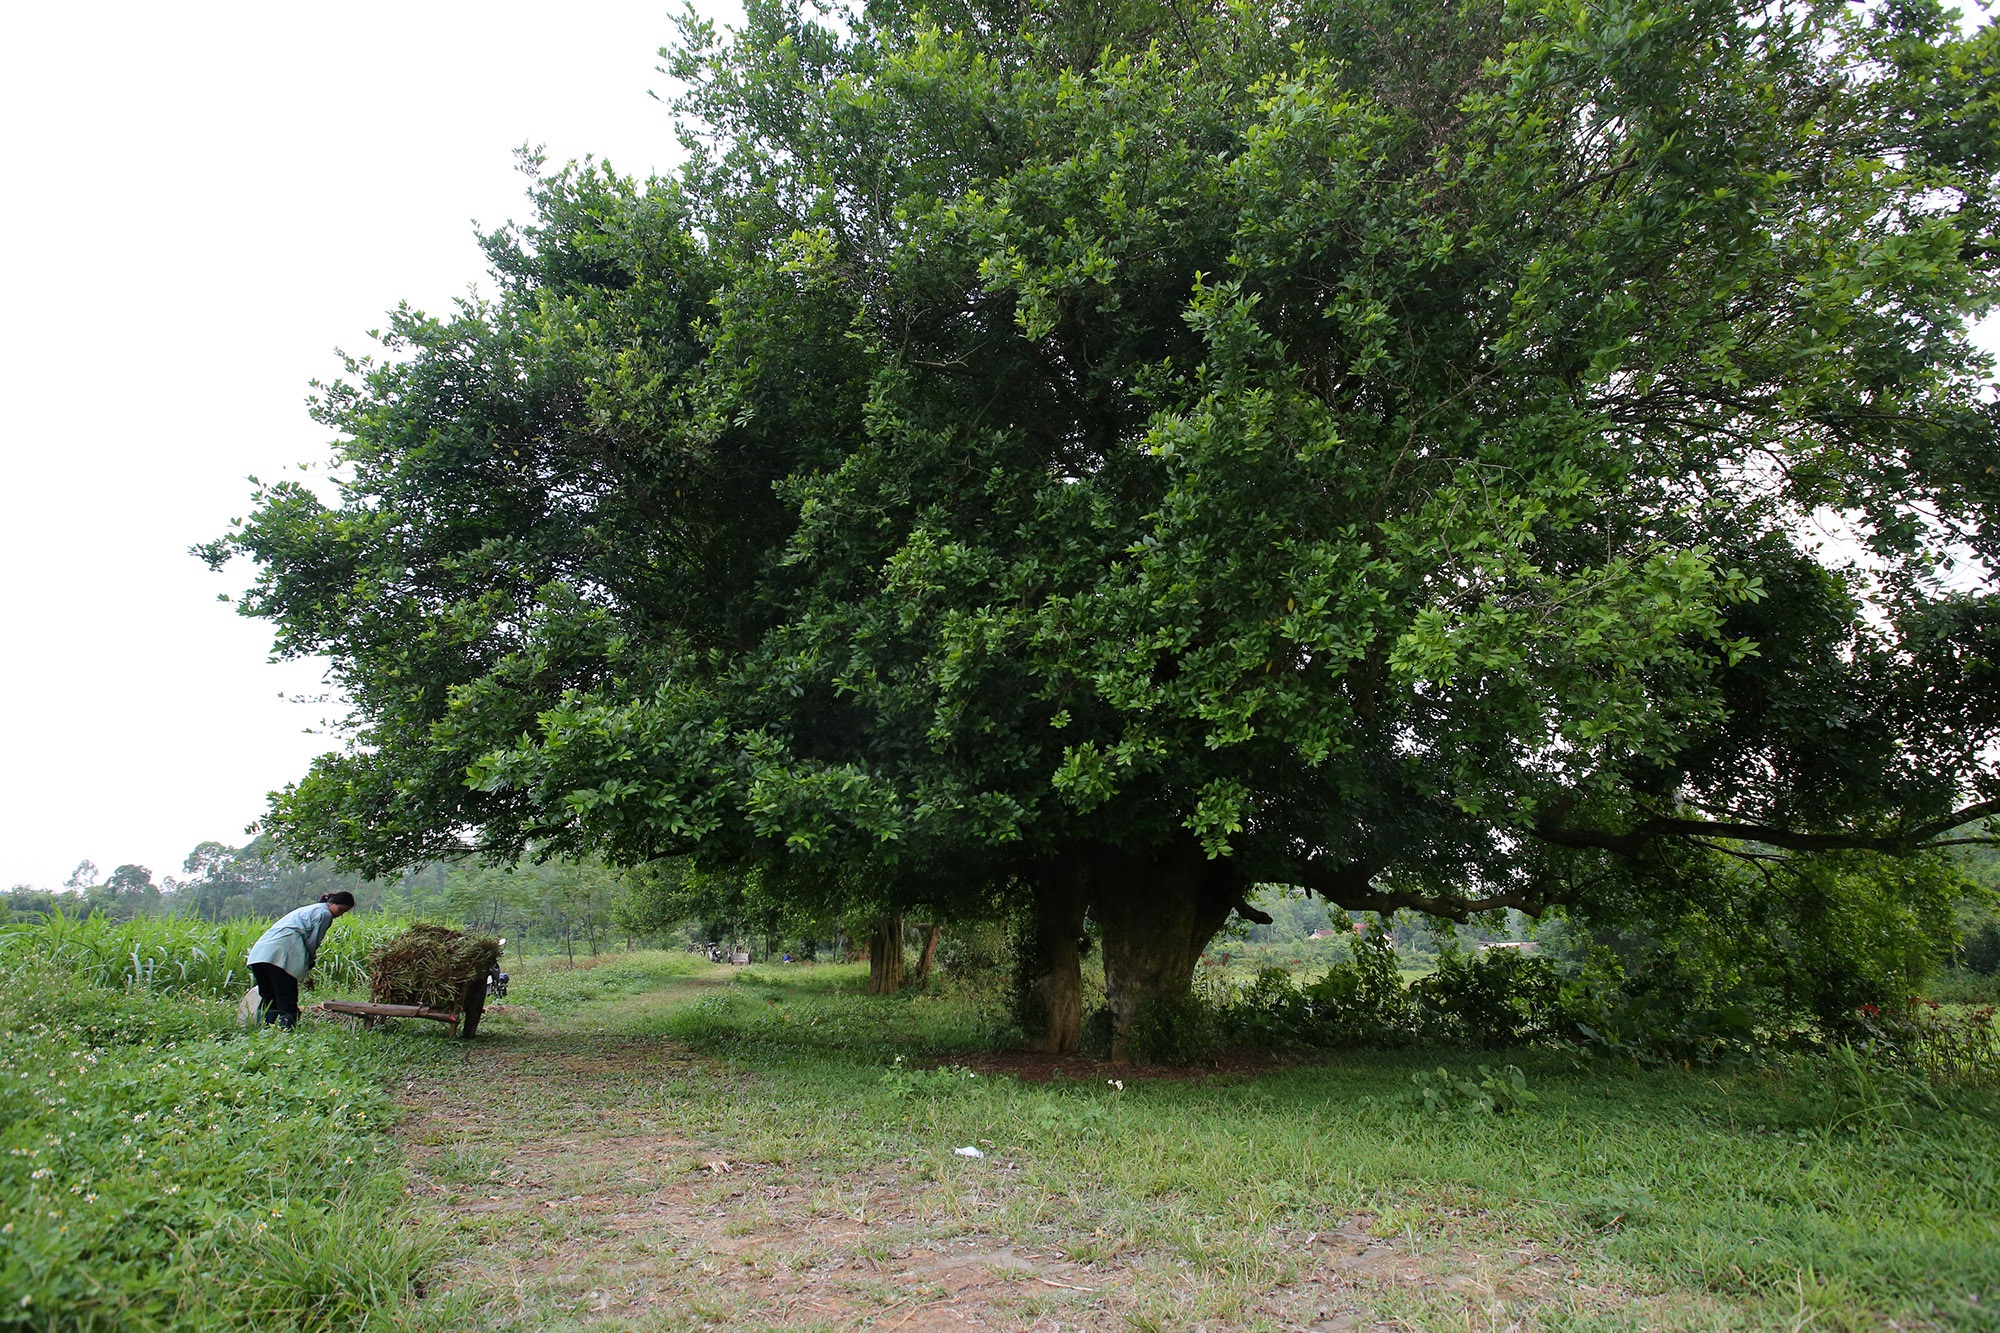 Rặng cây duối cổ hơn 1000 năm tuổi ở Hà Nội - 5